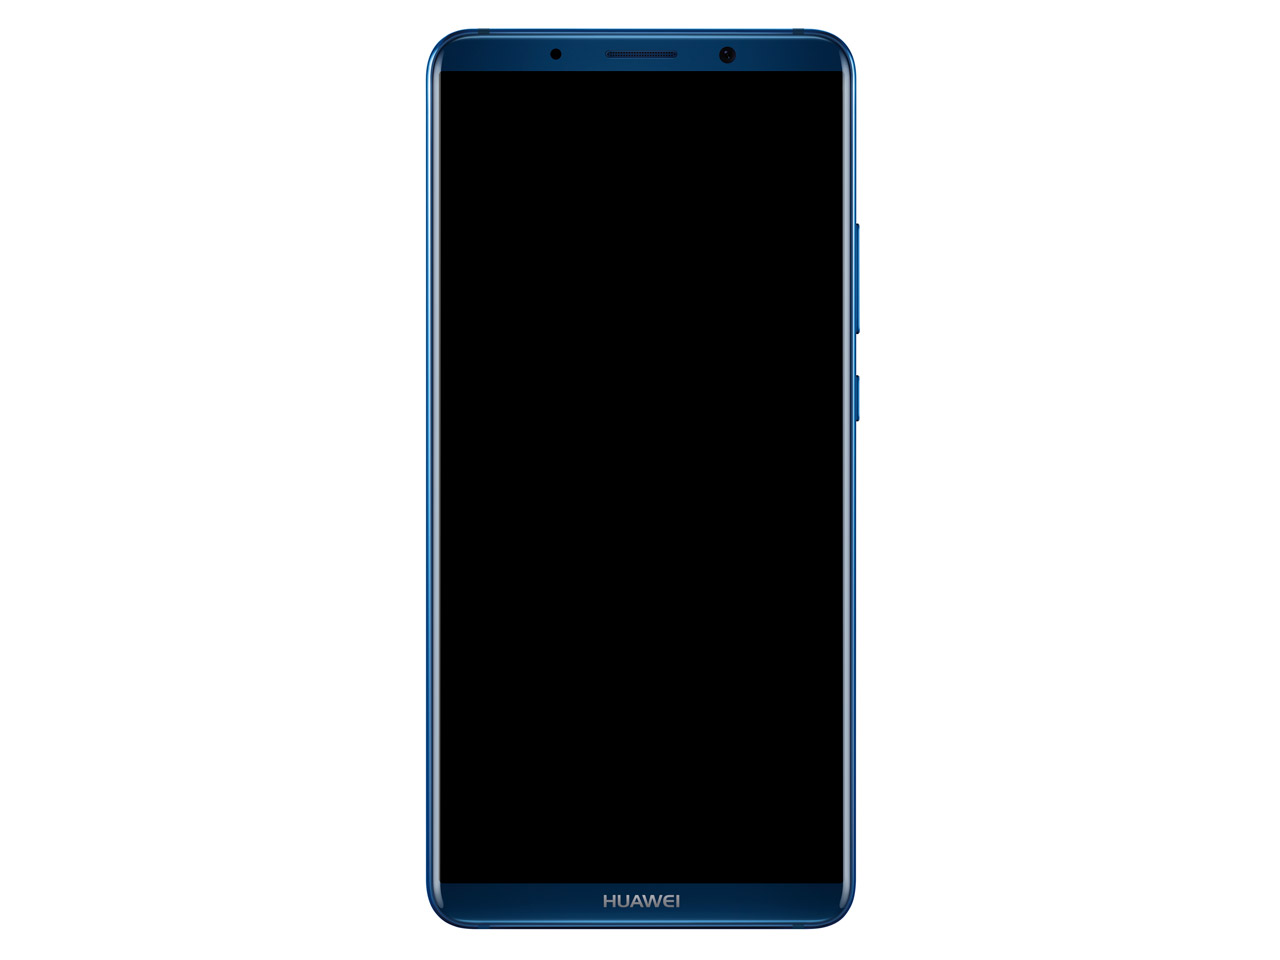 価格.com - 『本体1』 HUAWEI Mate 10 Pro SIMフリー [ミッドナイトブルー] の製品画像